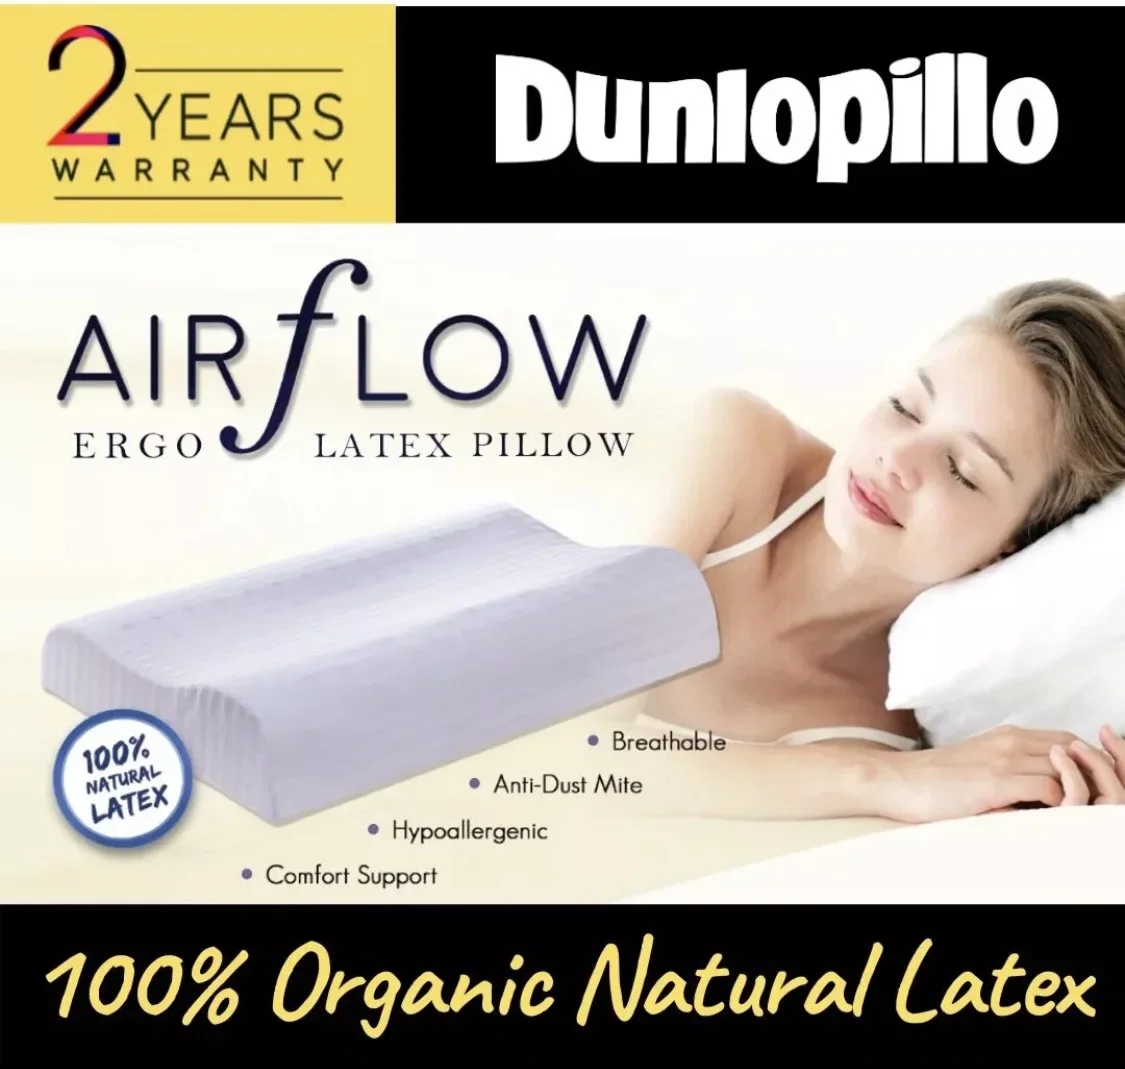 Dunlopillo Natural Latex Pillow - Airflow Ergo [HYPOALLERGENIC & ANTI-MICROBIAL] Superior Neck Support 邓禄普天然乳胶枕 [ETA 10-20-2021]